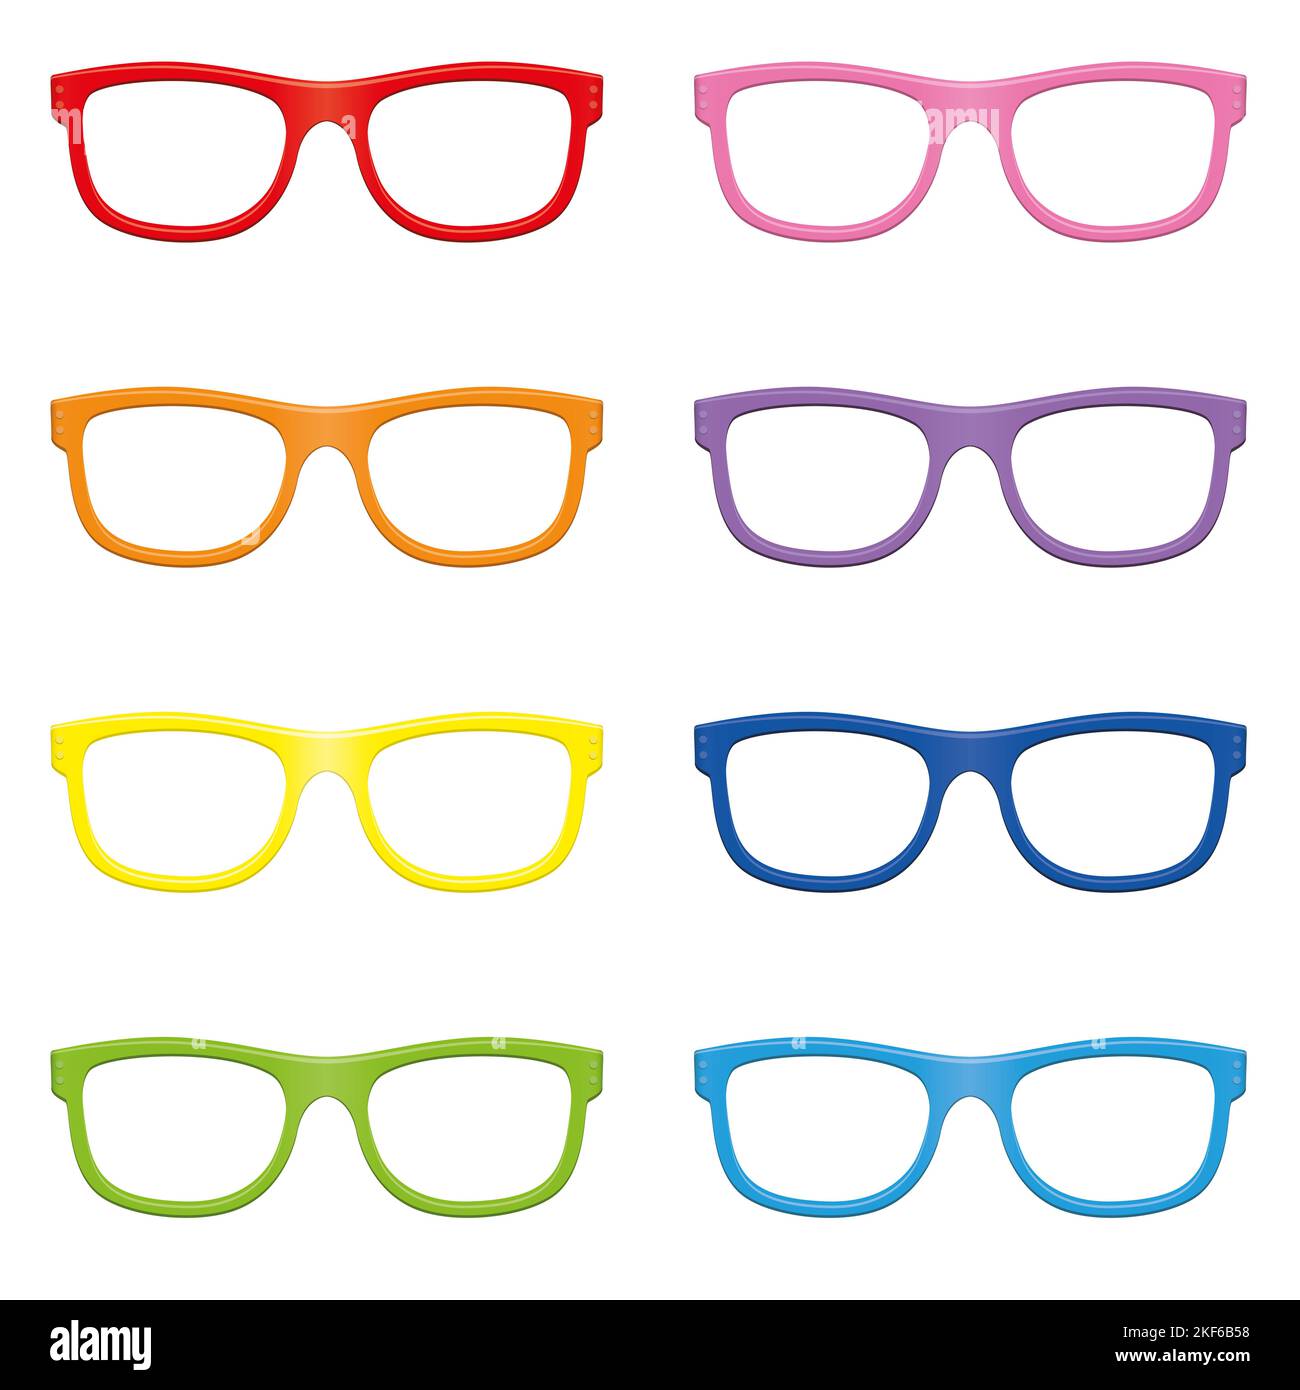 Lunettes, caractéristiques tendance colorées à mettre sur quelqu'un - lunettes modernes colorées avec rouge, orange, jaune, vert, rose, cadre violet et bleu. Banque D'Images